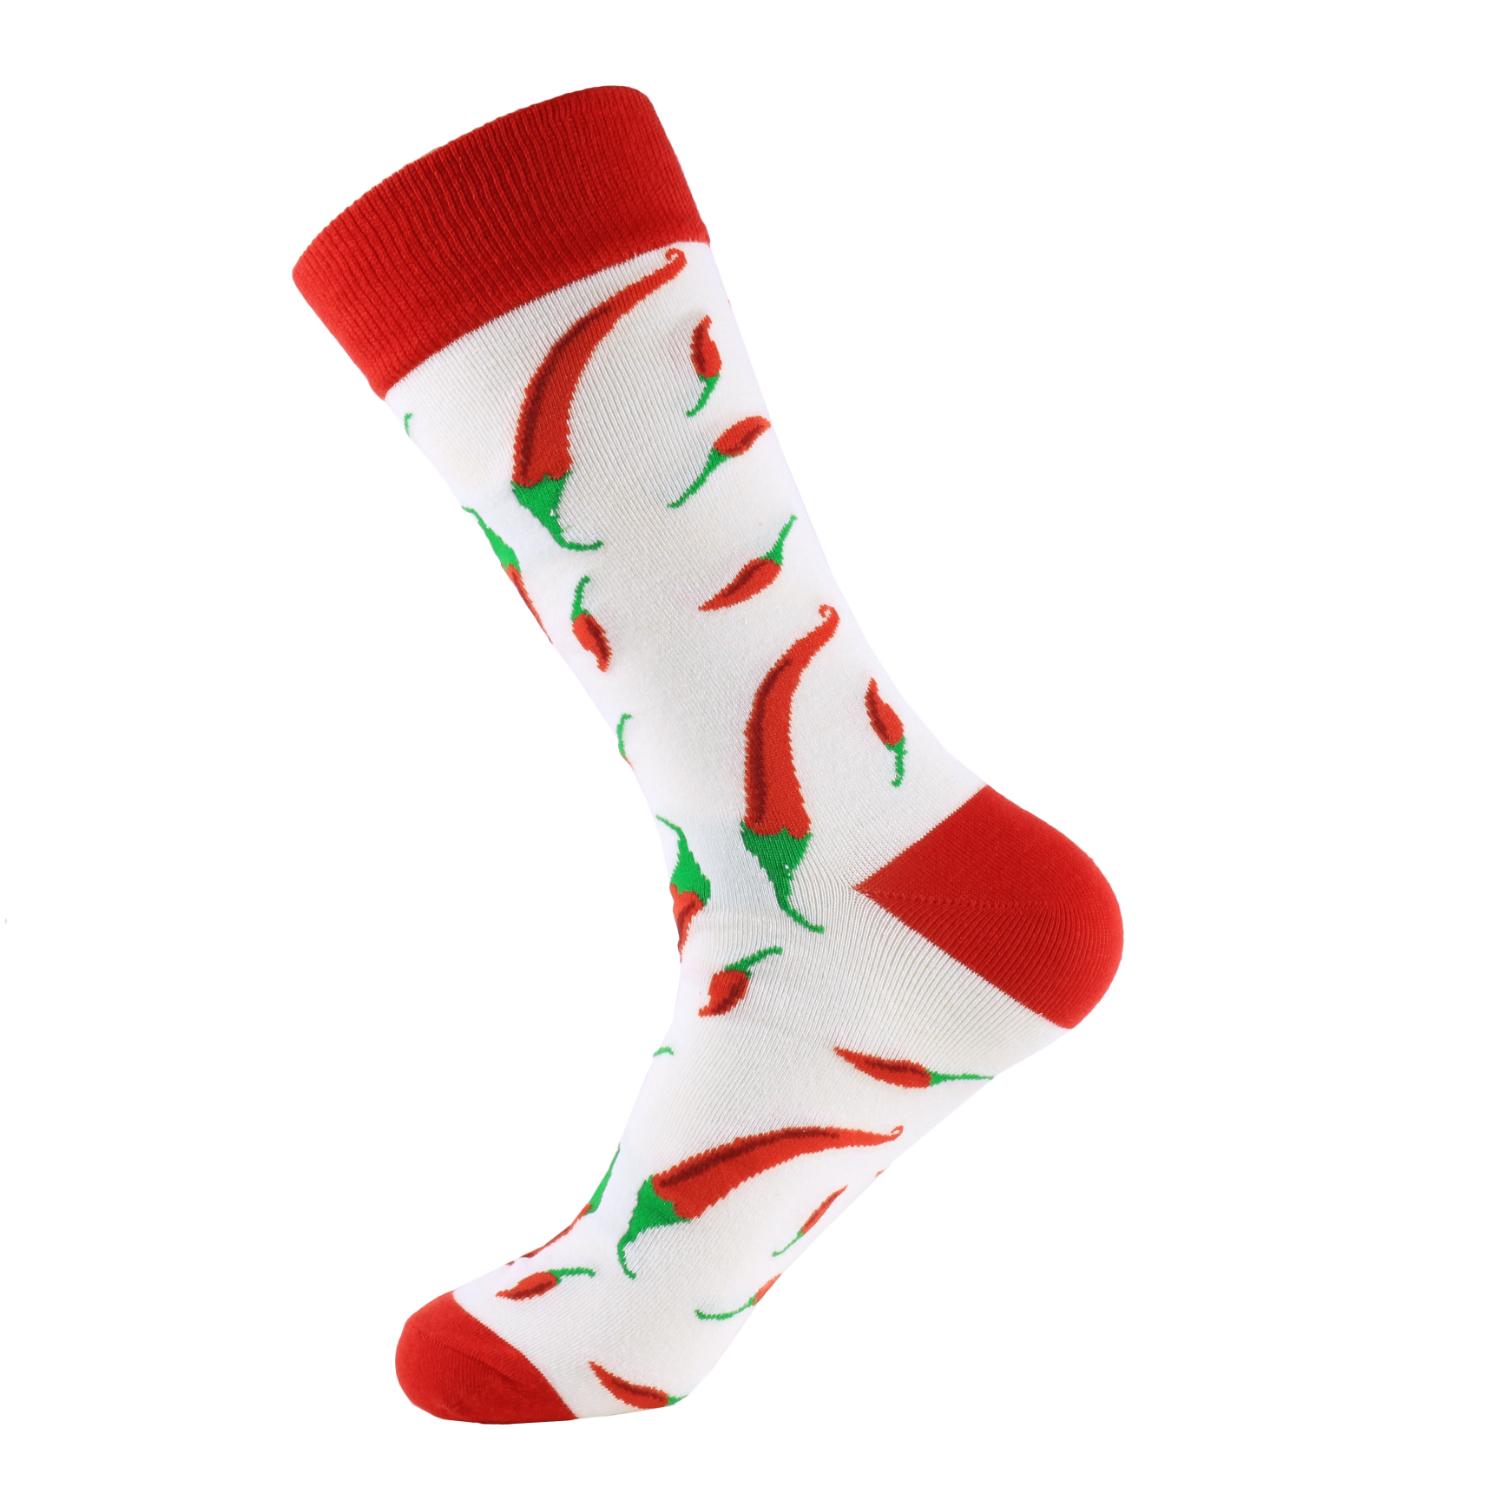 Изображение товара: Мужские носки PEONFLY 1 пара, хлопковые смешные короткие носки, Веселые носки с мультяшными животными, собаками, новинка, носки для рождественского подарка